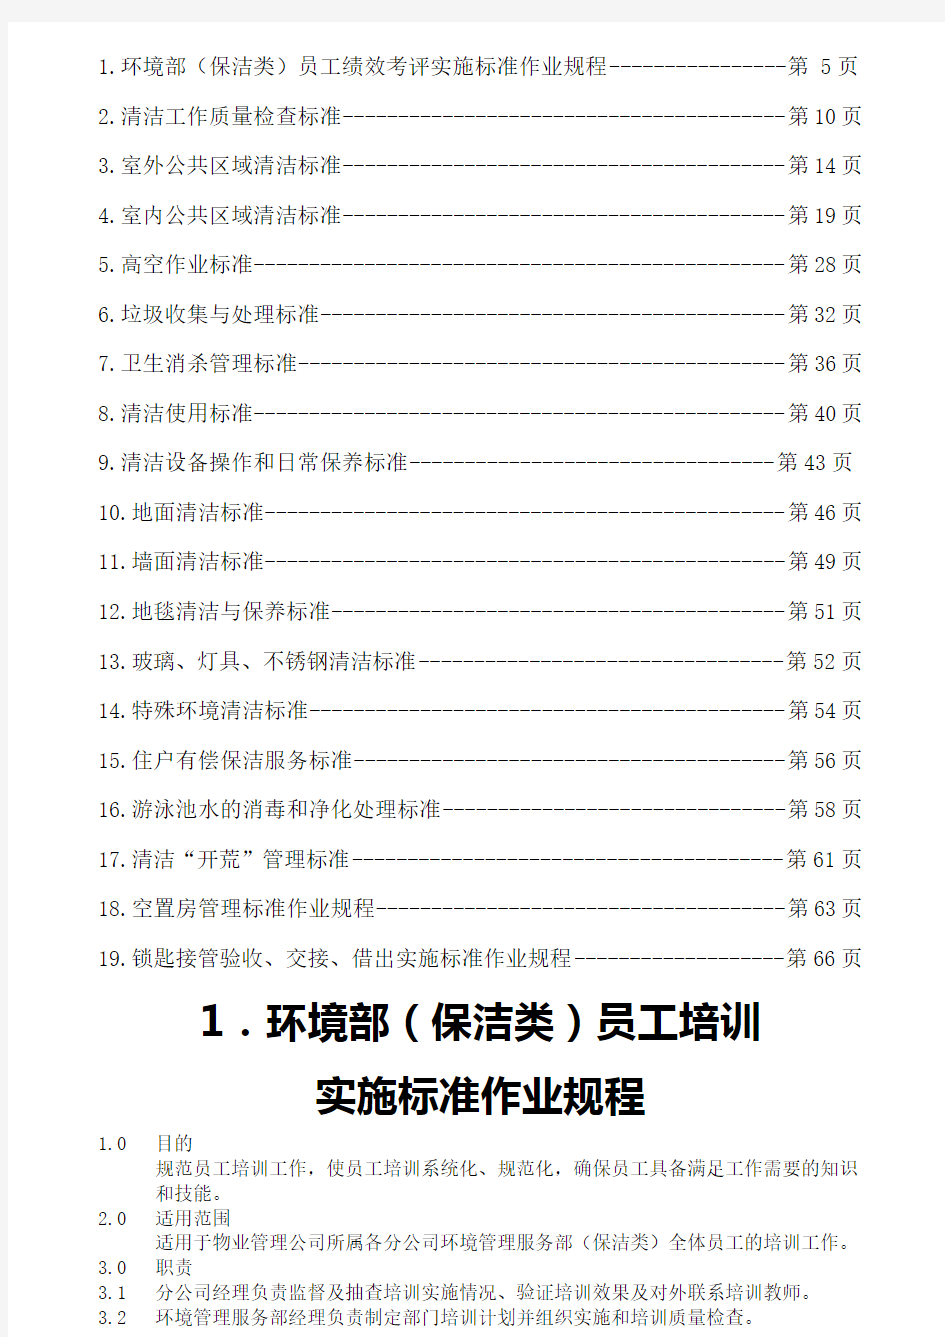 《碧桂园物业管理公司环境保洁管理制度》(68页)